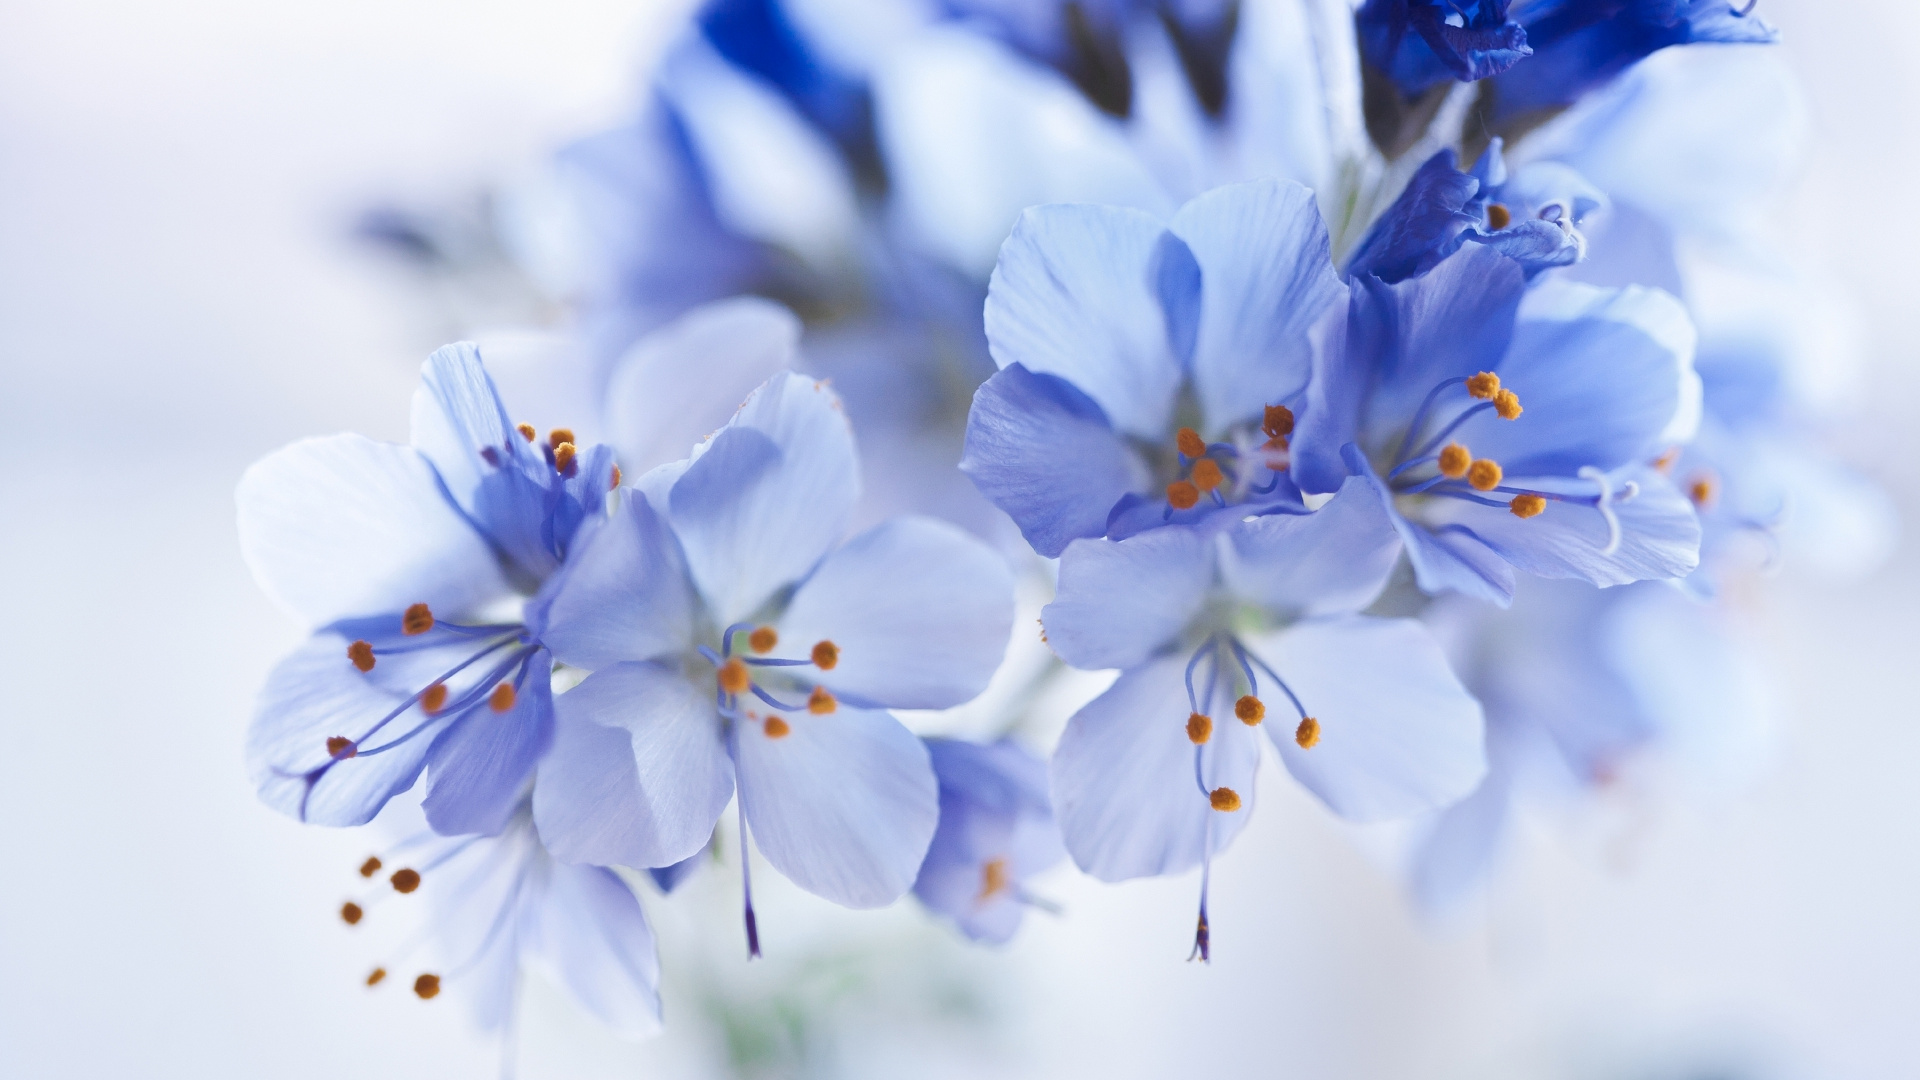 White and Blue Flowers in Tilt Shift Lens. Wallpaper in 1920x1080 Resolution